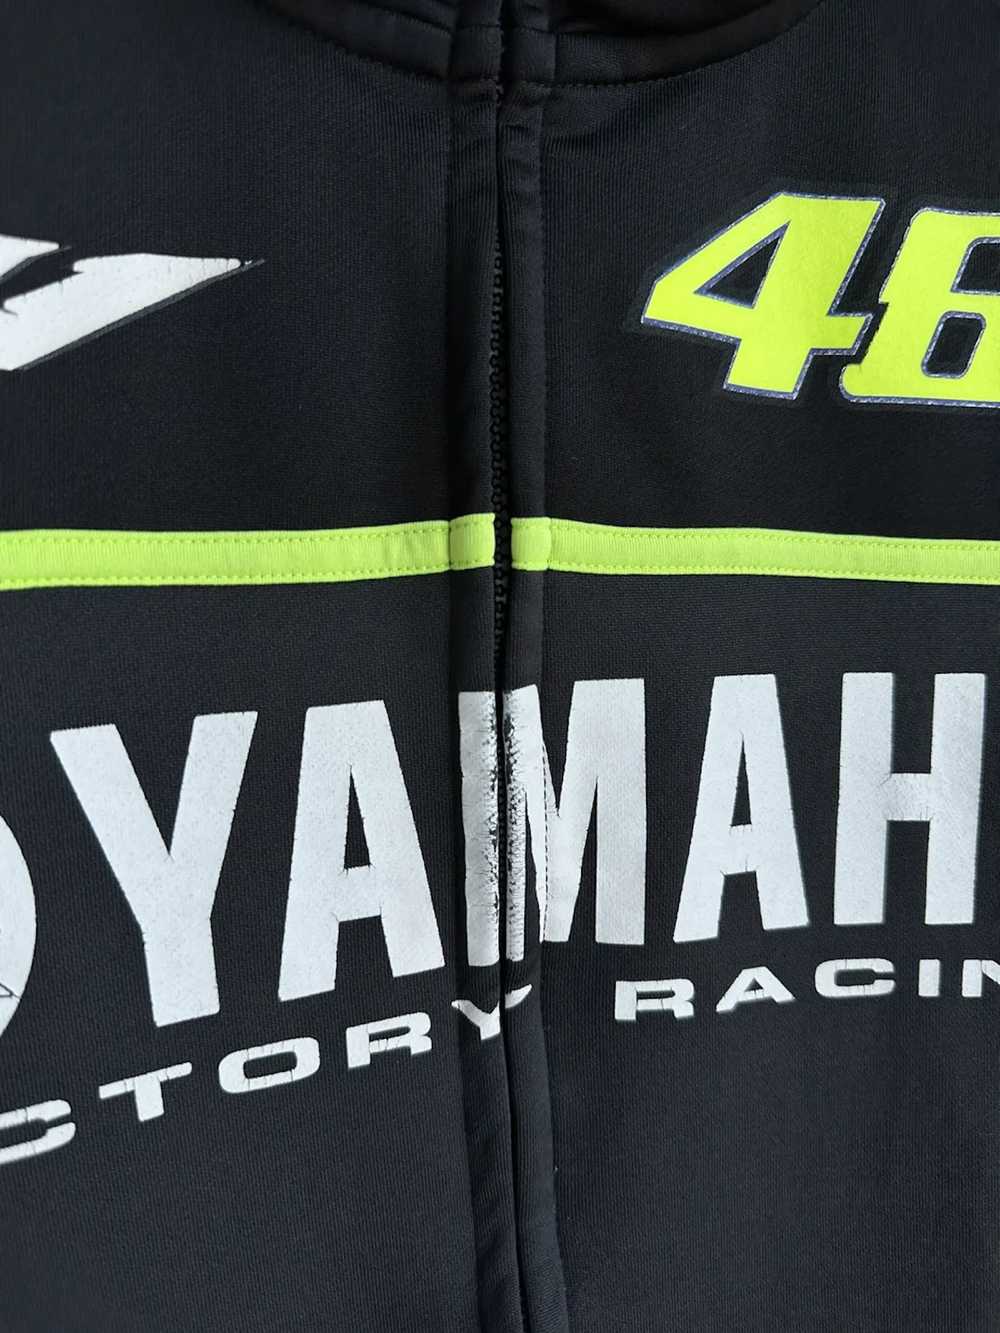 Racing × Vintage × Yamaha Vintage Yamaha Factory … - image 4